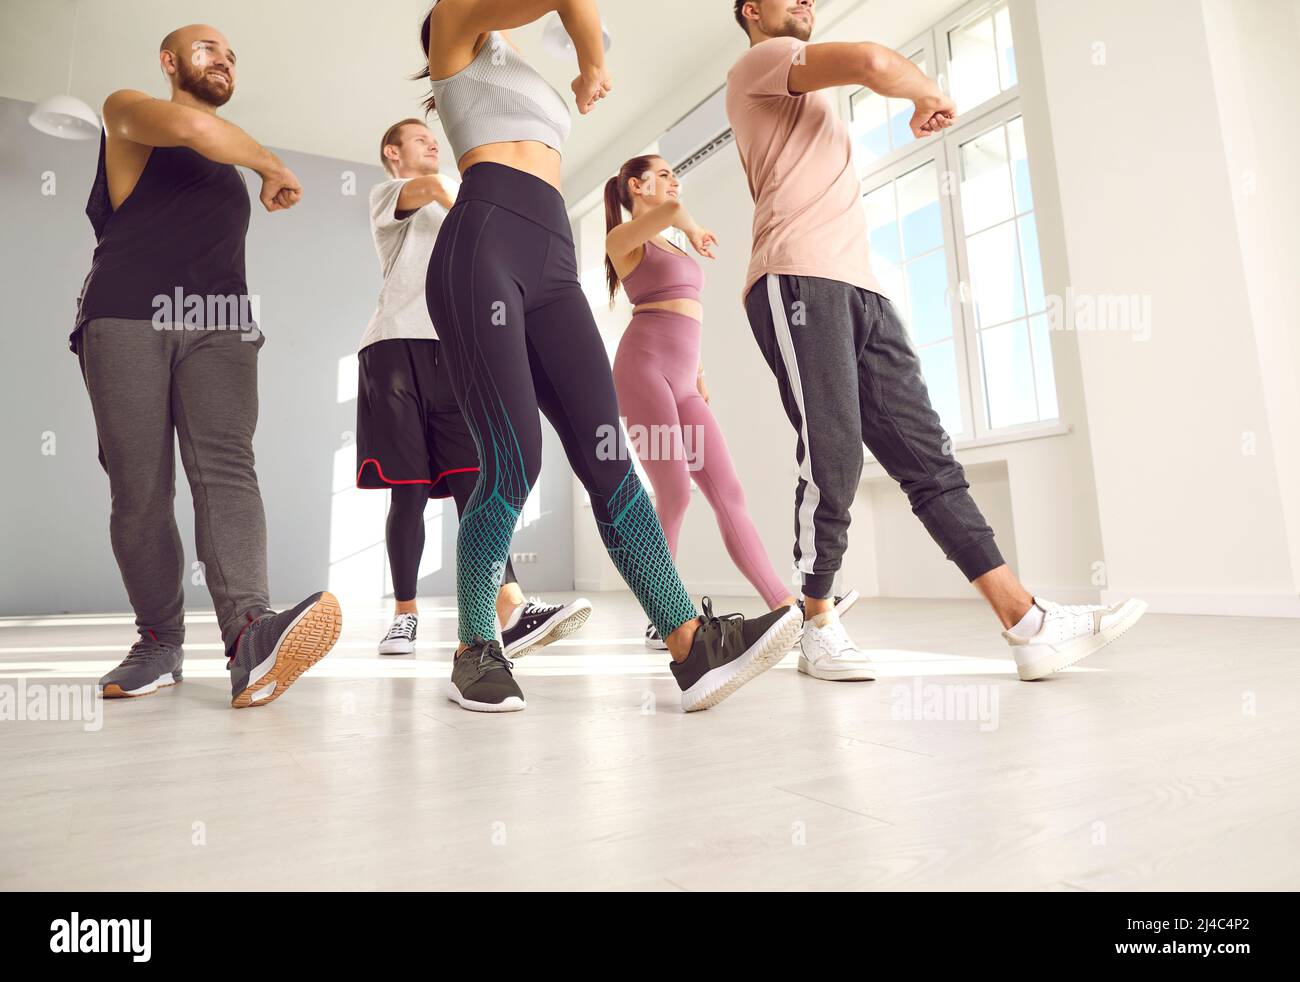 Eine Gruppe von jungen, fit trainingsfreien Menschen, die einen Tanz- oder Fitnesskurs mit einem Trainer absolvieren Stockfoto